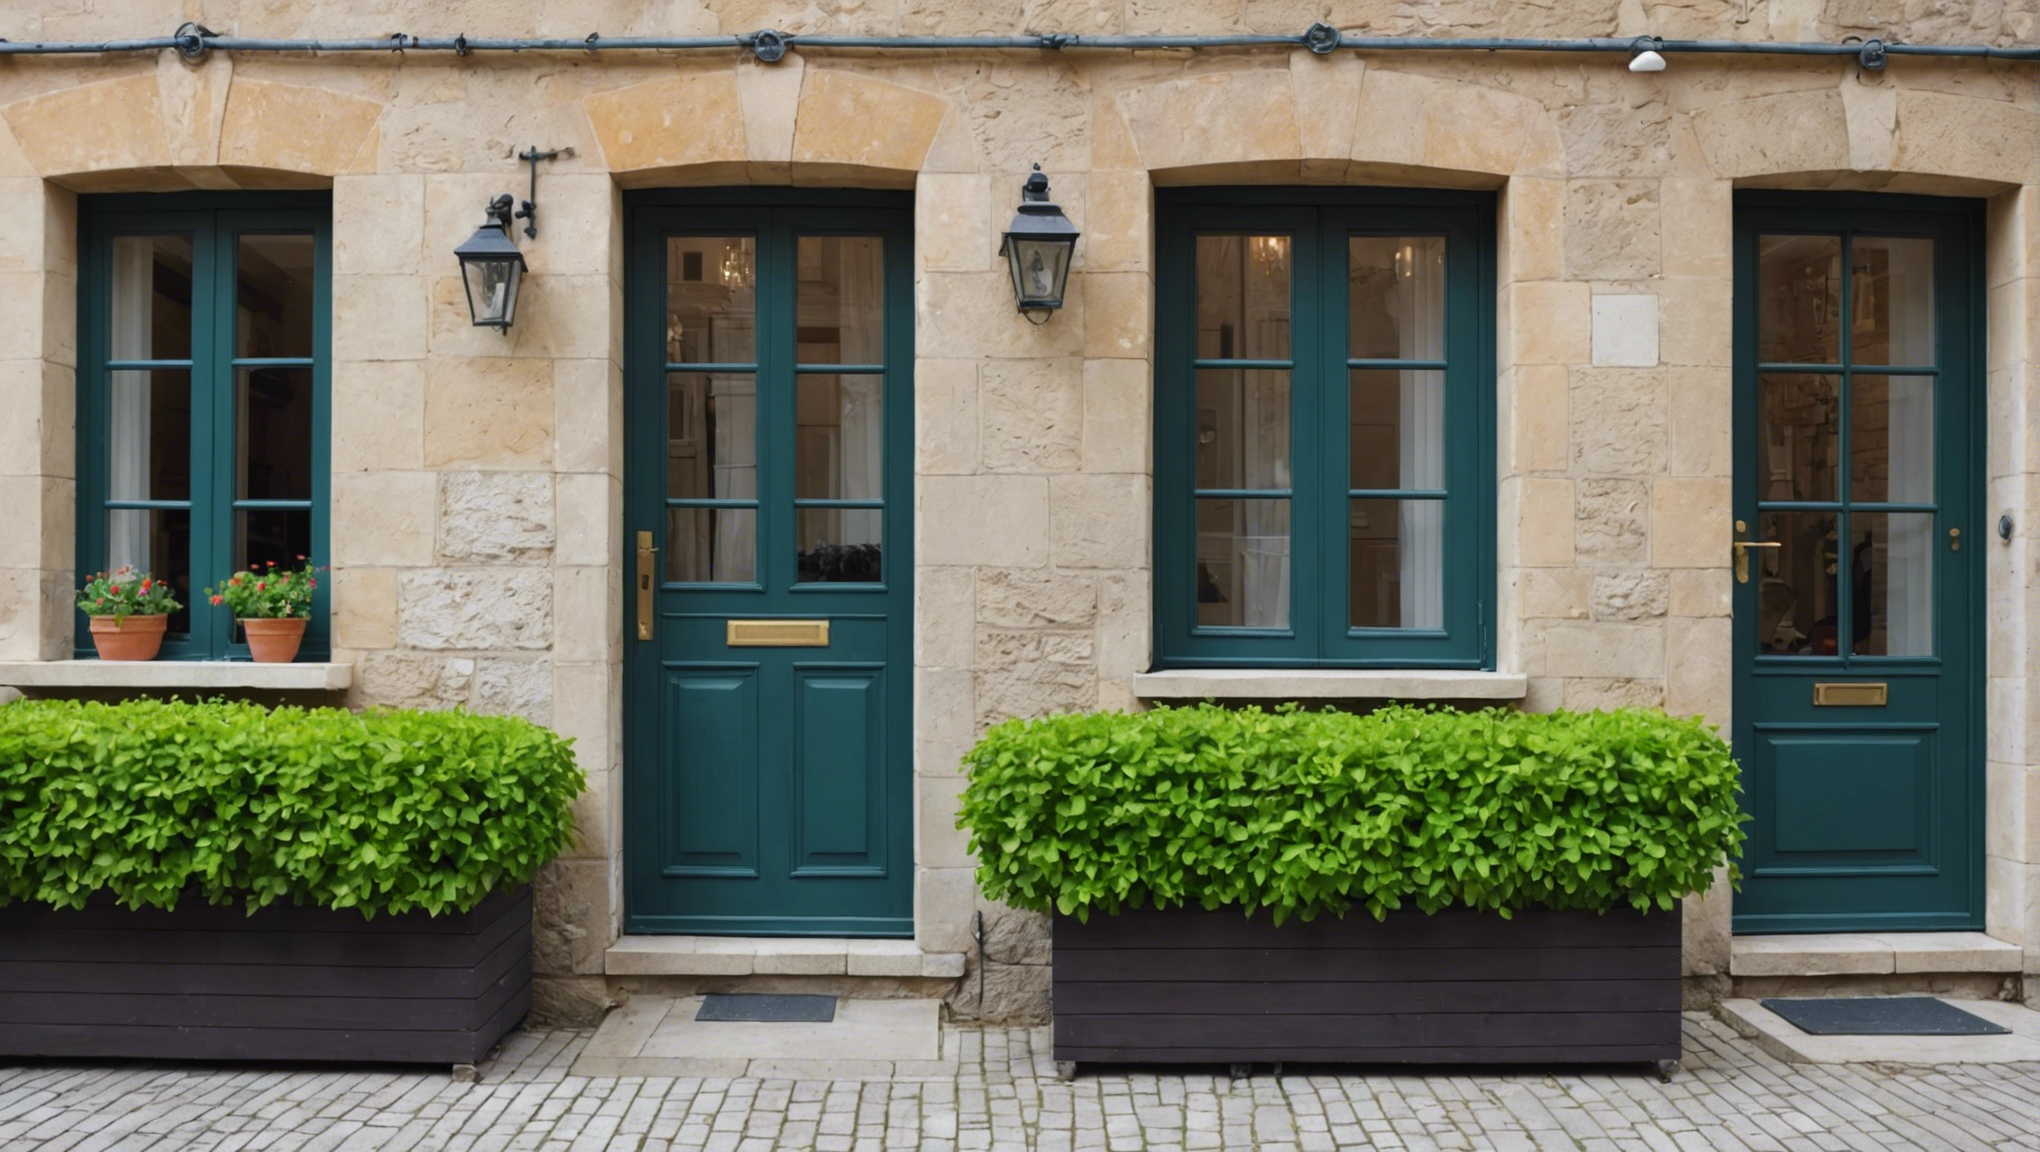 découvrez nos conseils pour choisir la porte-fenêtre idéale pour votre maison. trouvez la combinaison parfaite entre style, fonctionnalité et durabilité.